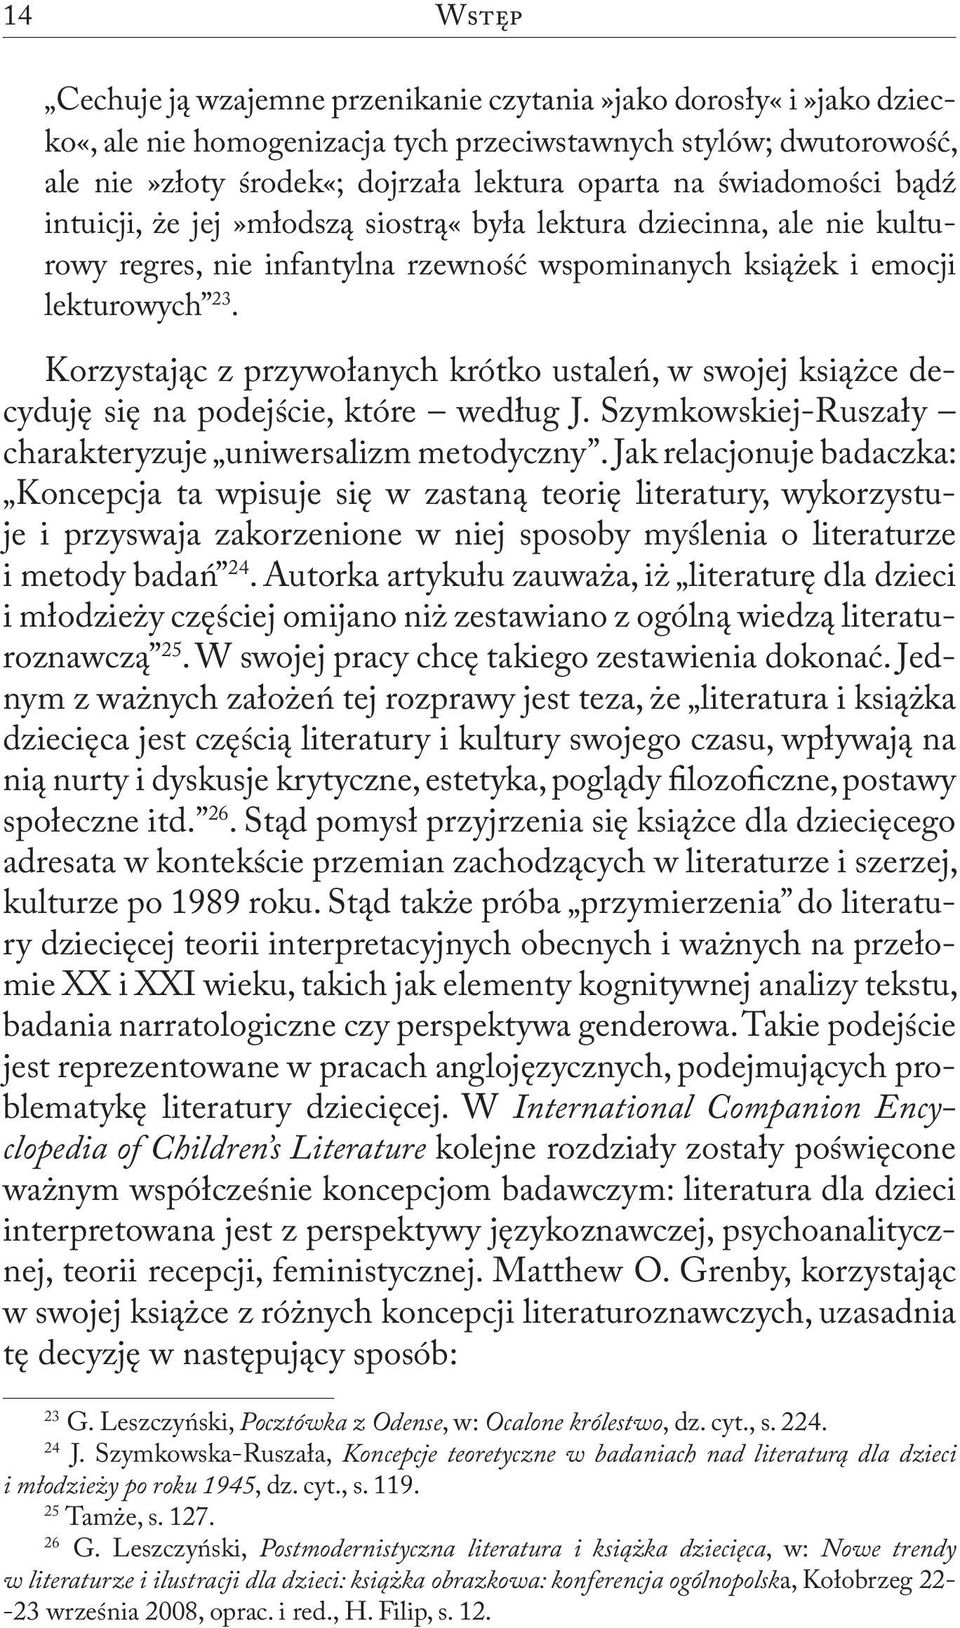 Korzystając z przywołanych krótko ustaleń, w swojej książce decyduję się na podejście, które według J. Szymkowskiej-Ruszały charakteryzuje uniwersalizm metodyczny.